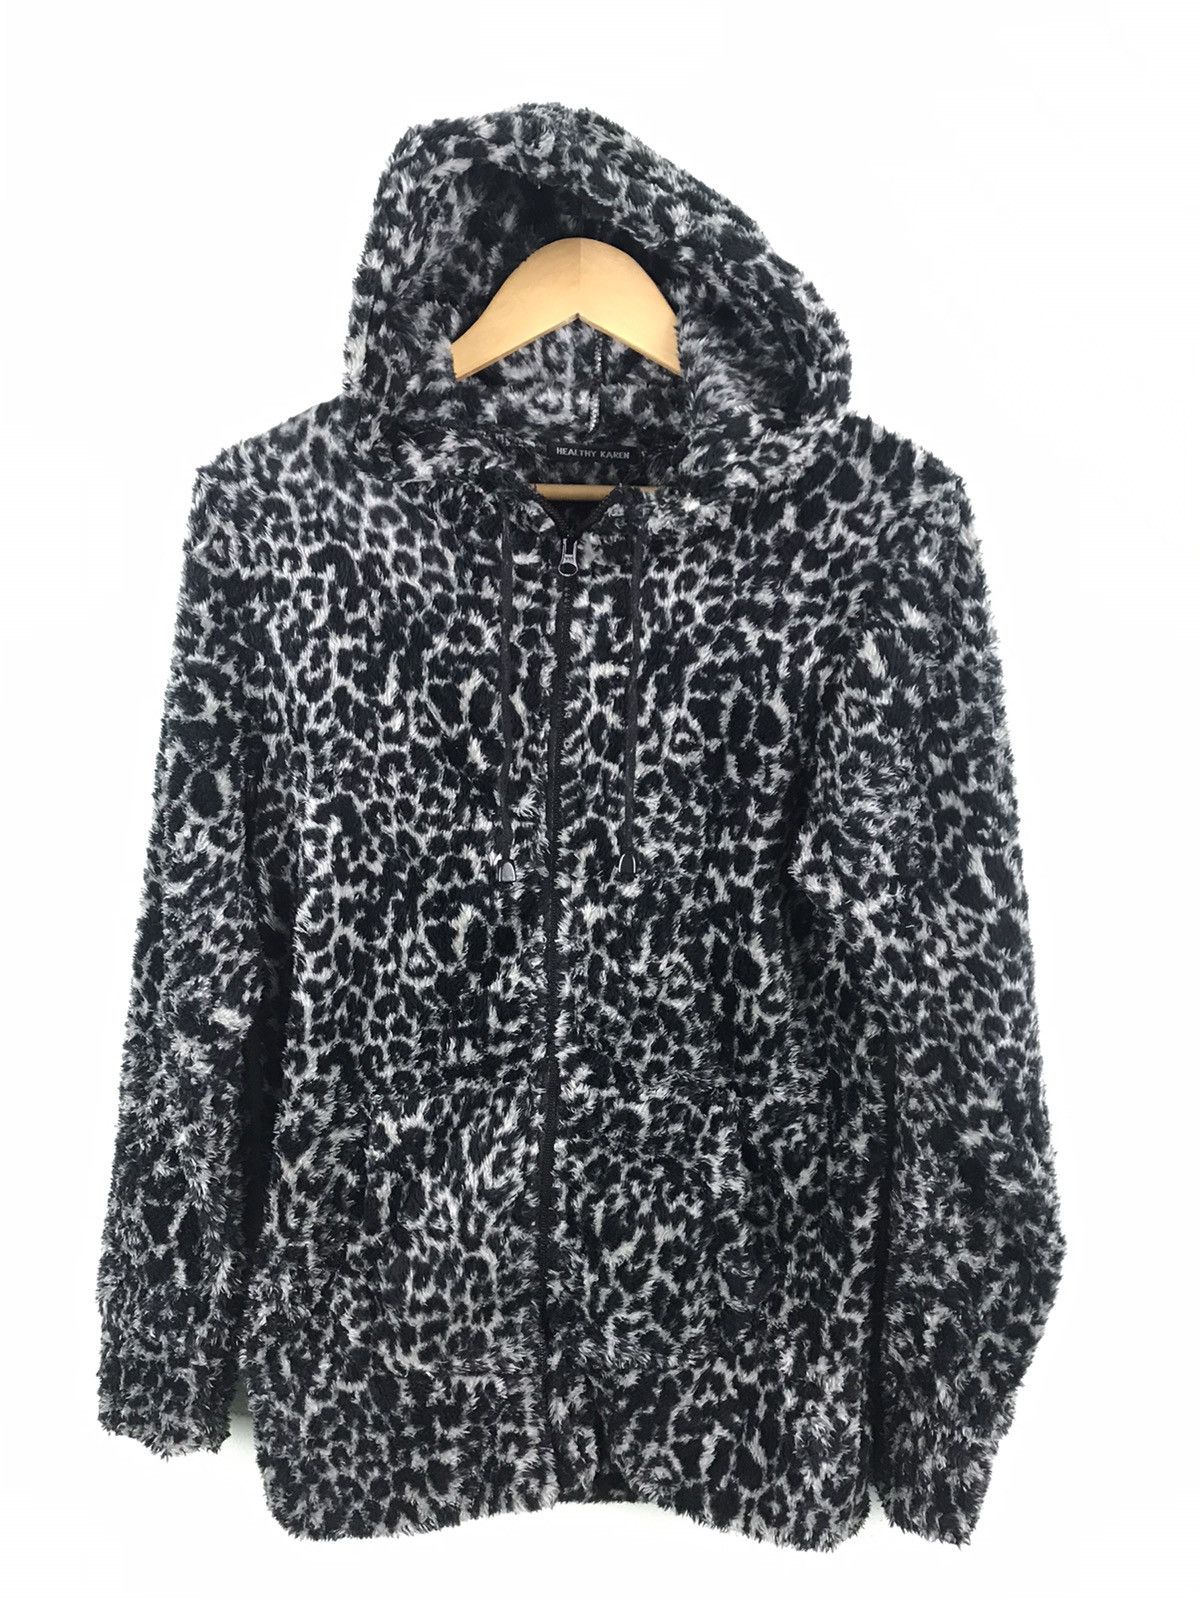 Japanese Brand - Healthy Karen Leopard faux fur hoodie - GH1119 - 1